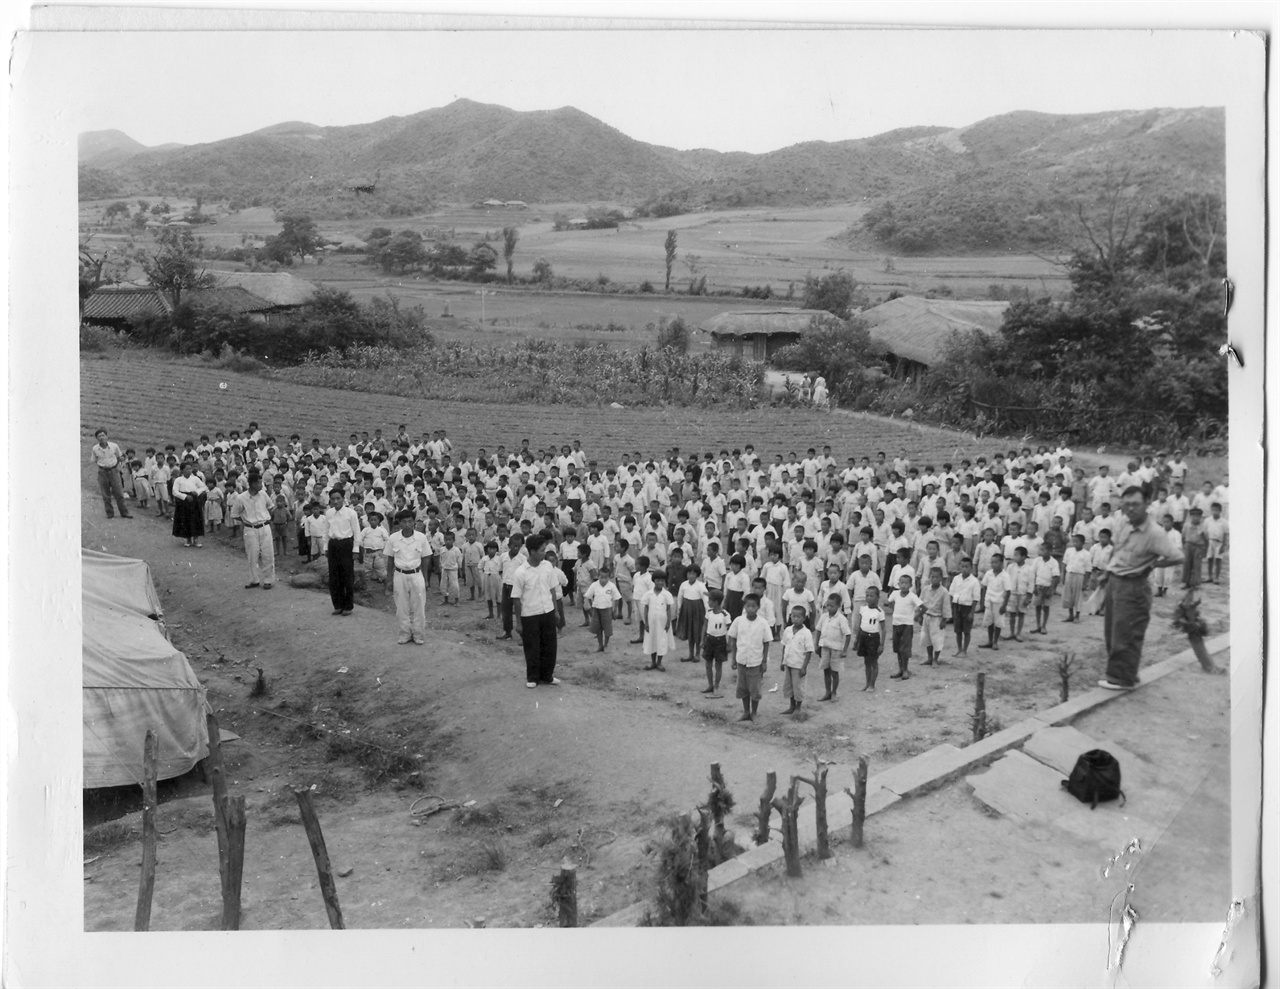  1952. 7. 동구 밖 밭에다가 임시로 천막을 친 초등학교의 애국 조회시간. 